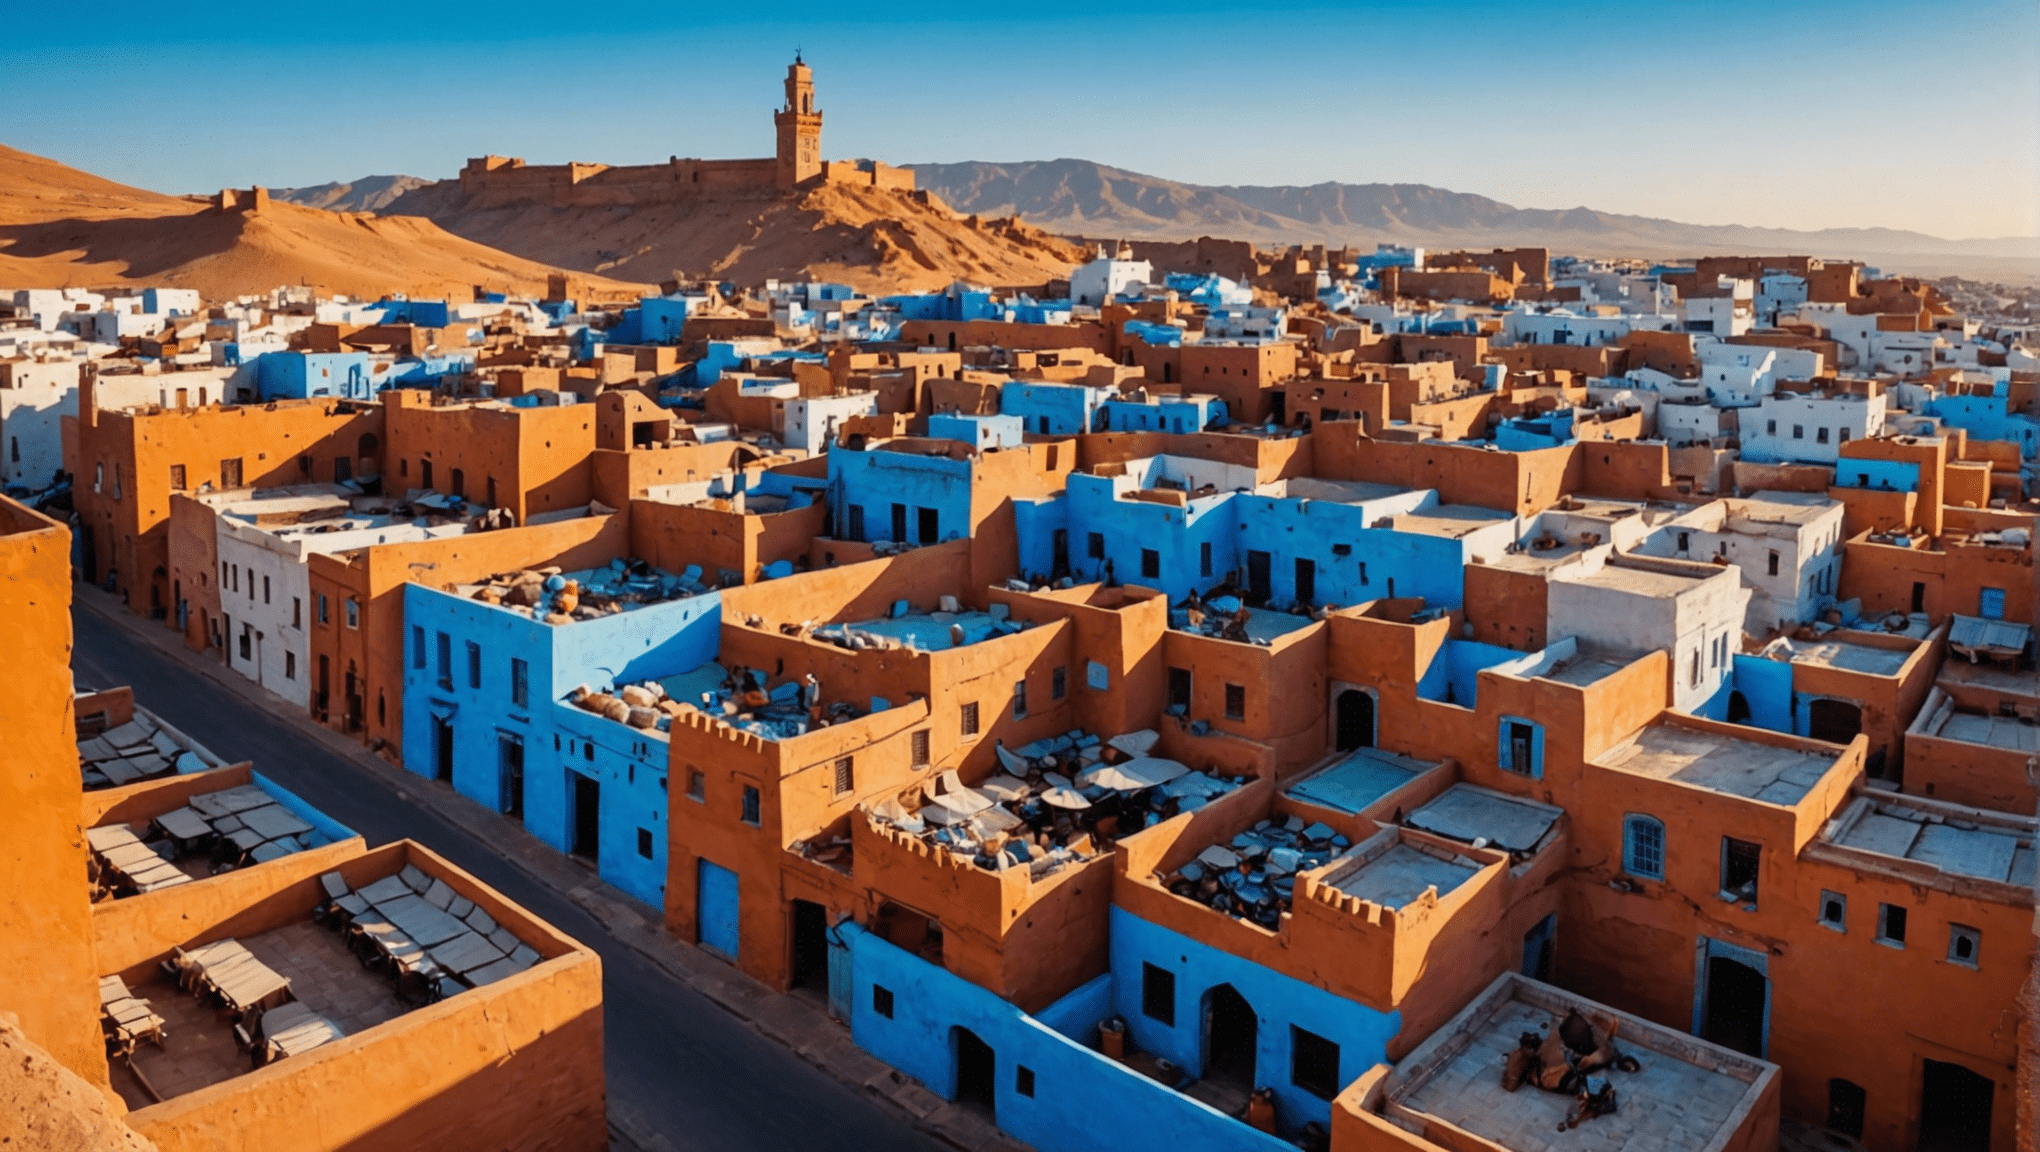 découvrez les lieux de tournage les plus époustouflants du Maroc et laissez-vous inspirer pour visiter ces lieux magnifiques pour votre prochaine aventure.